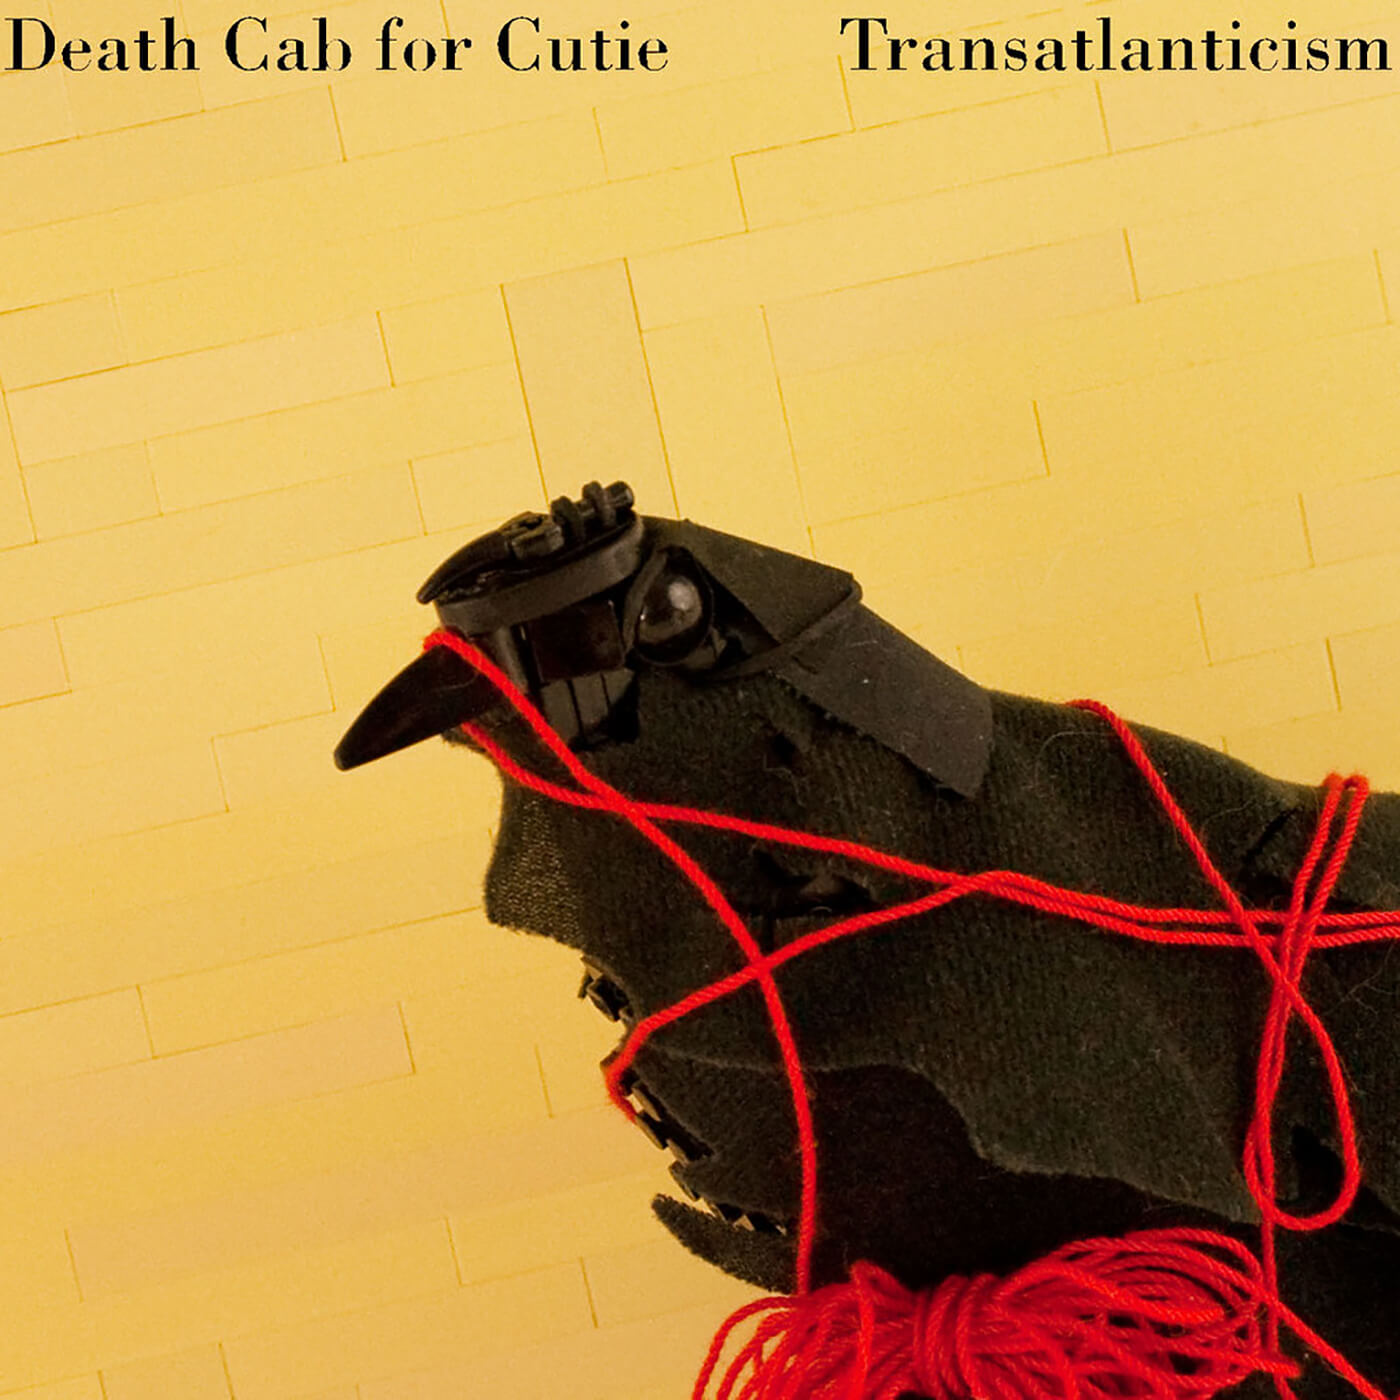 死亡对漂亮的女孩——Transatlanticism出租车